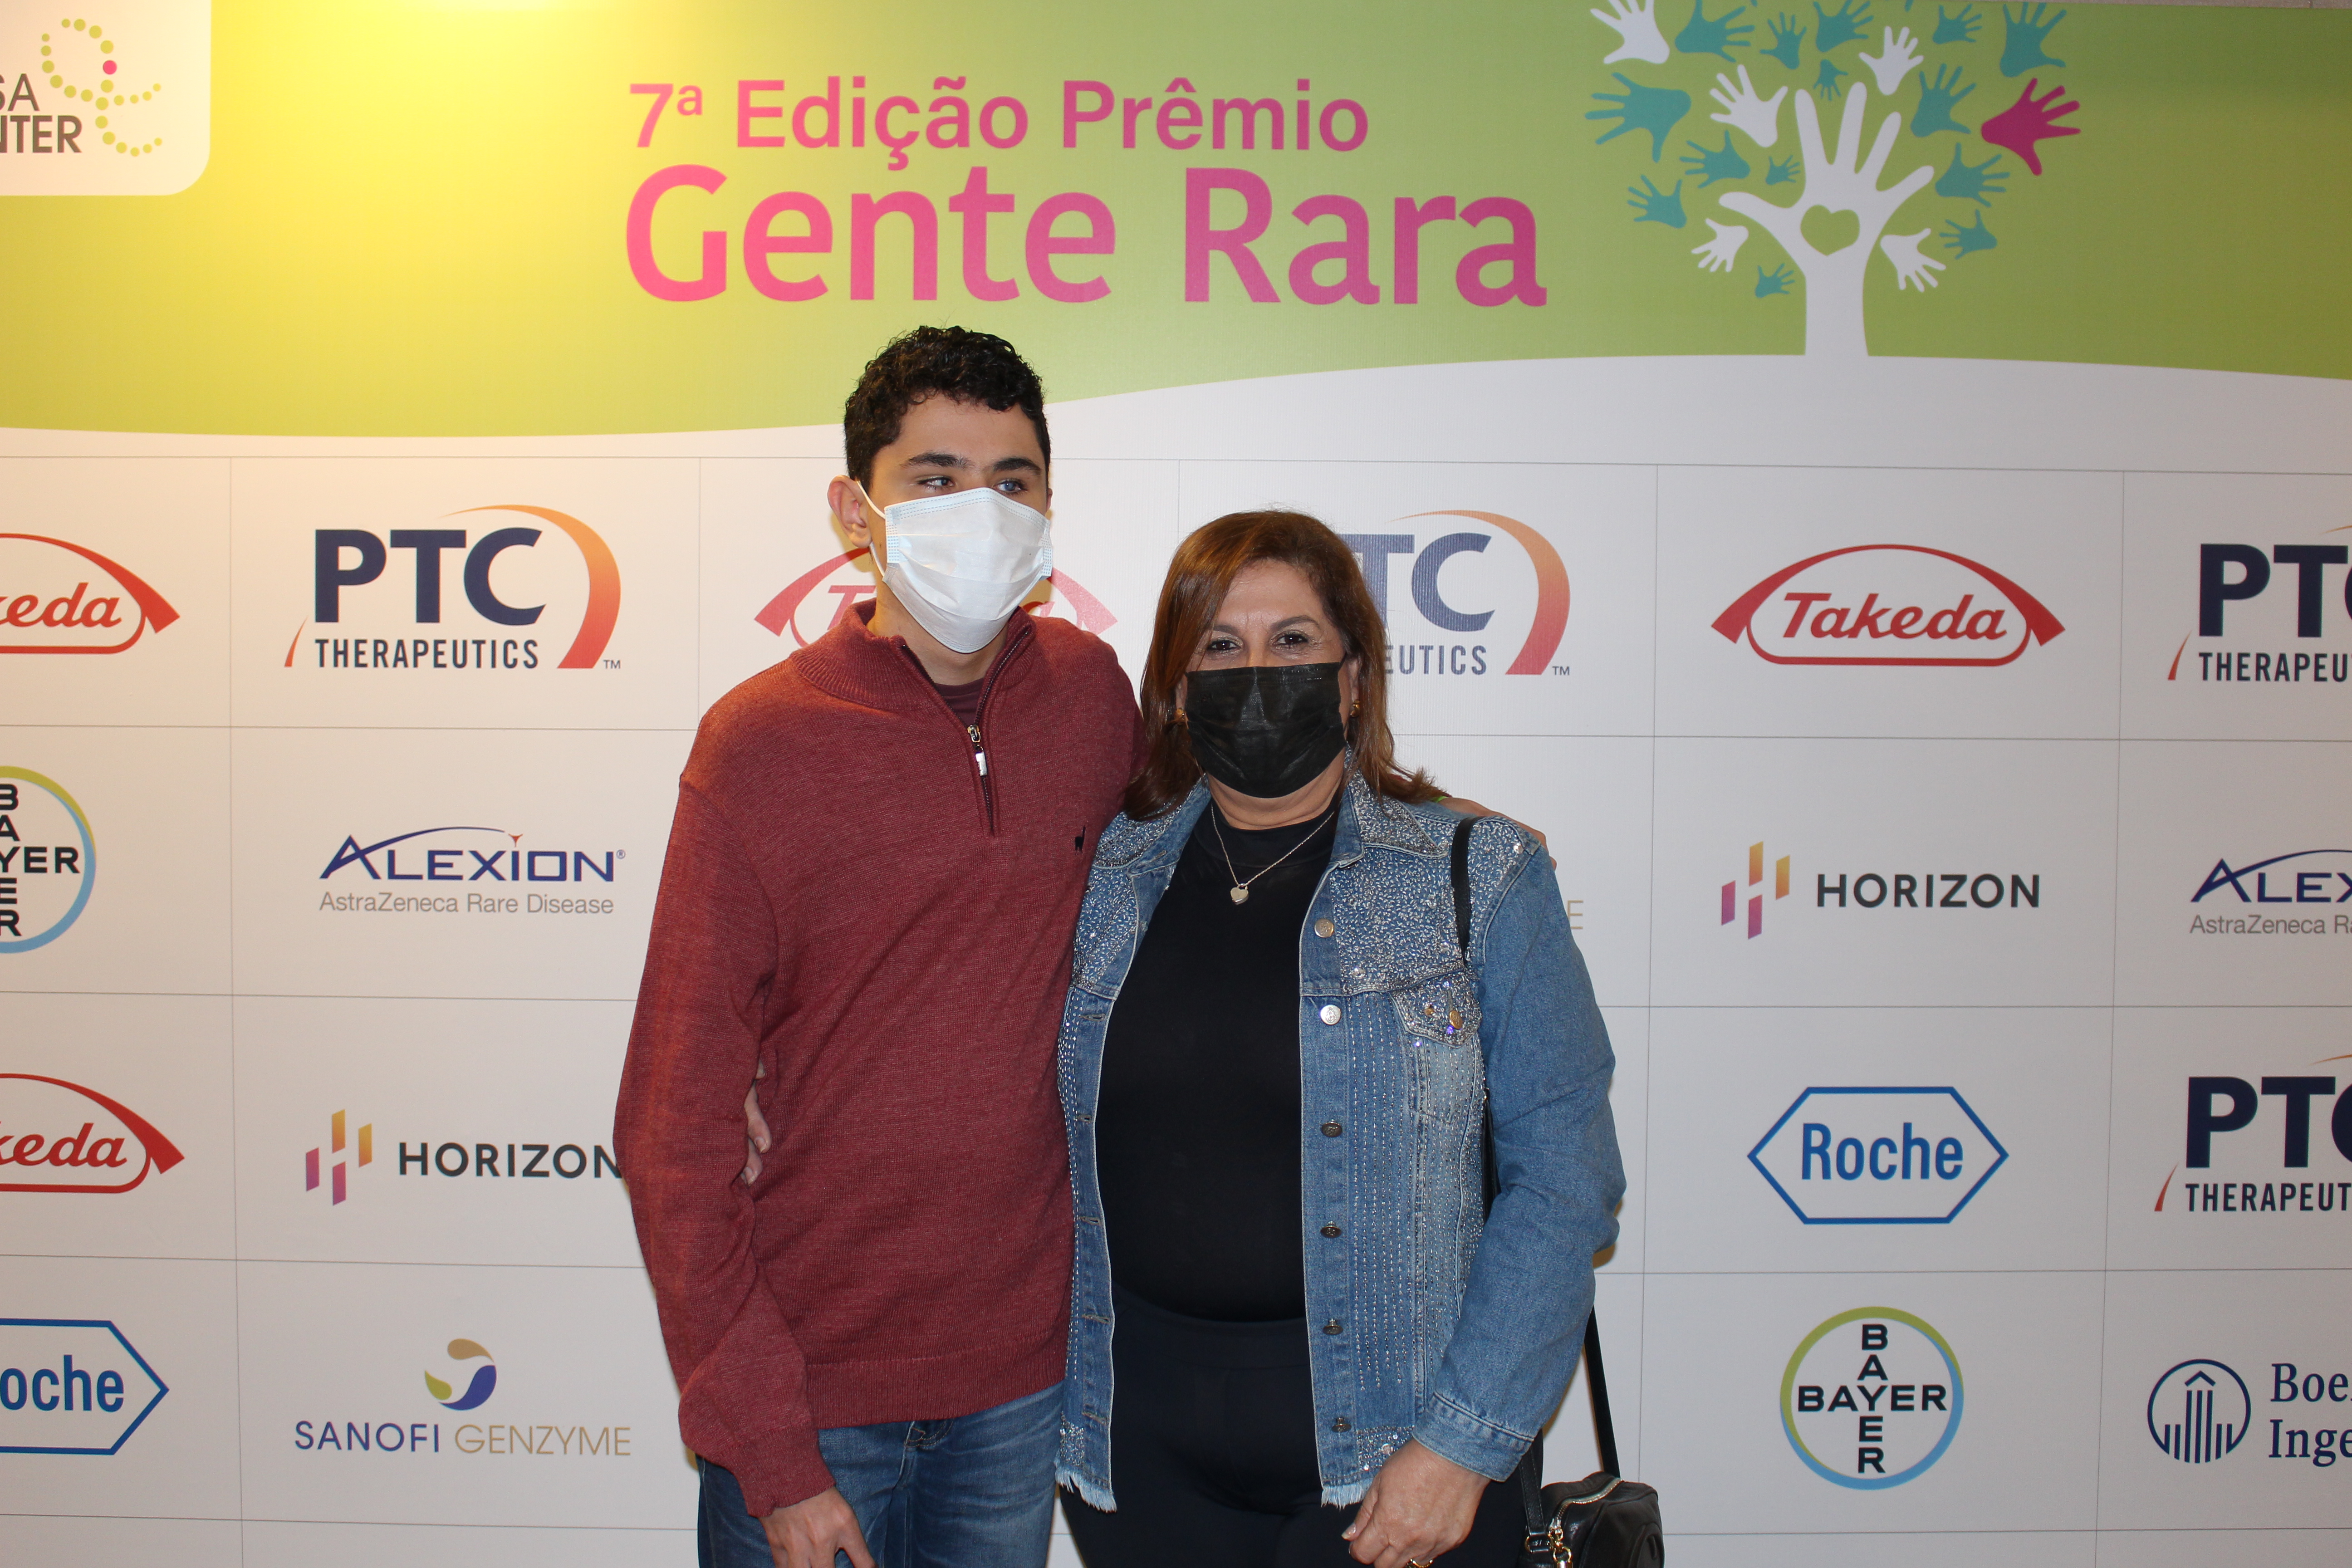 A secretária Silvia Grecco e seu filho Nickollas Grecco estão na frente do backdrop do evento. Nele contém os logotipos de empresas que apoiam o evento.